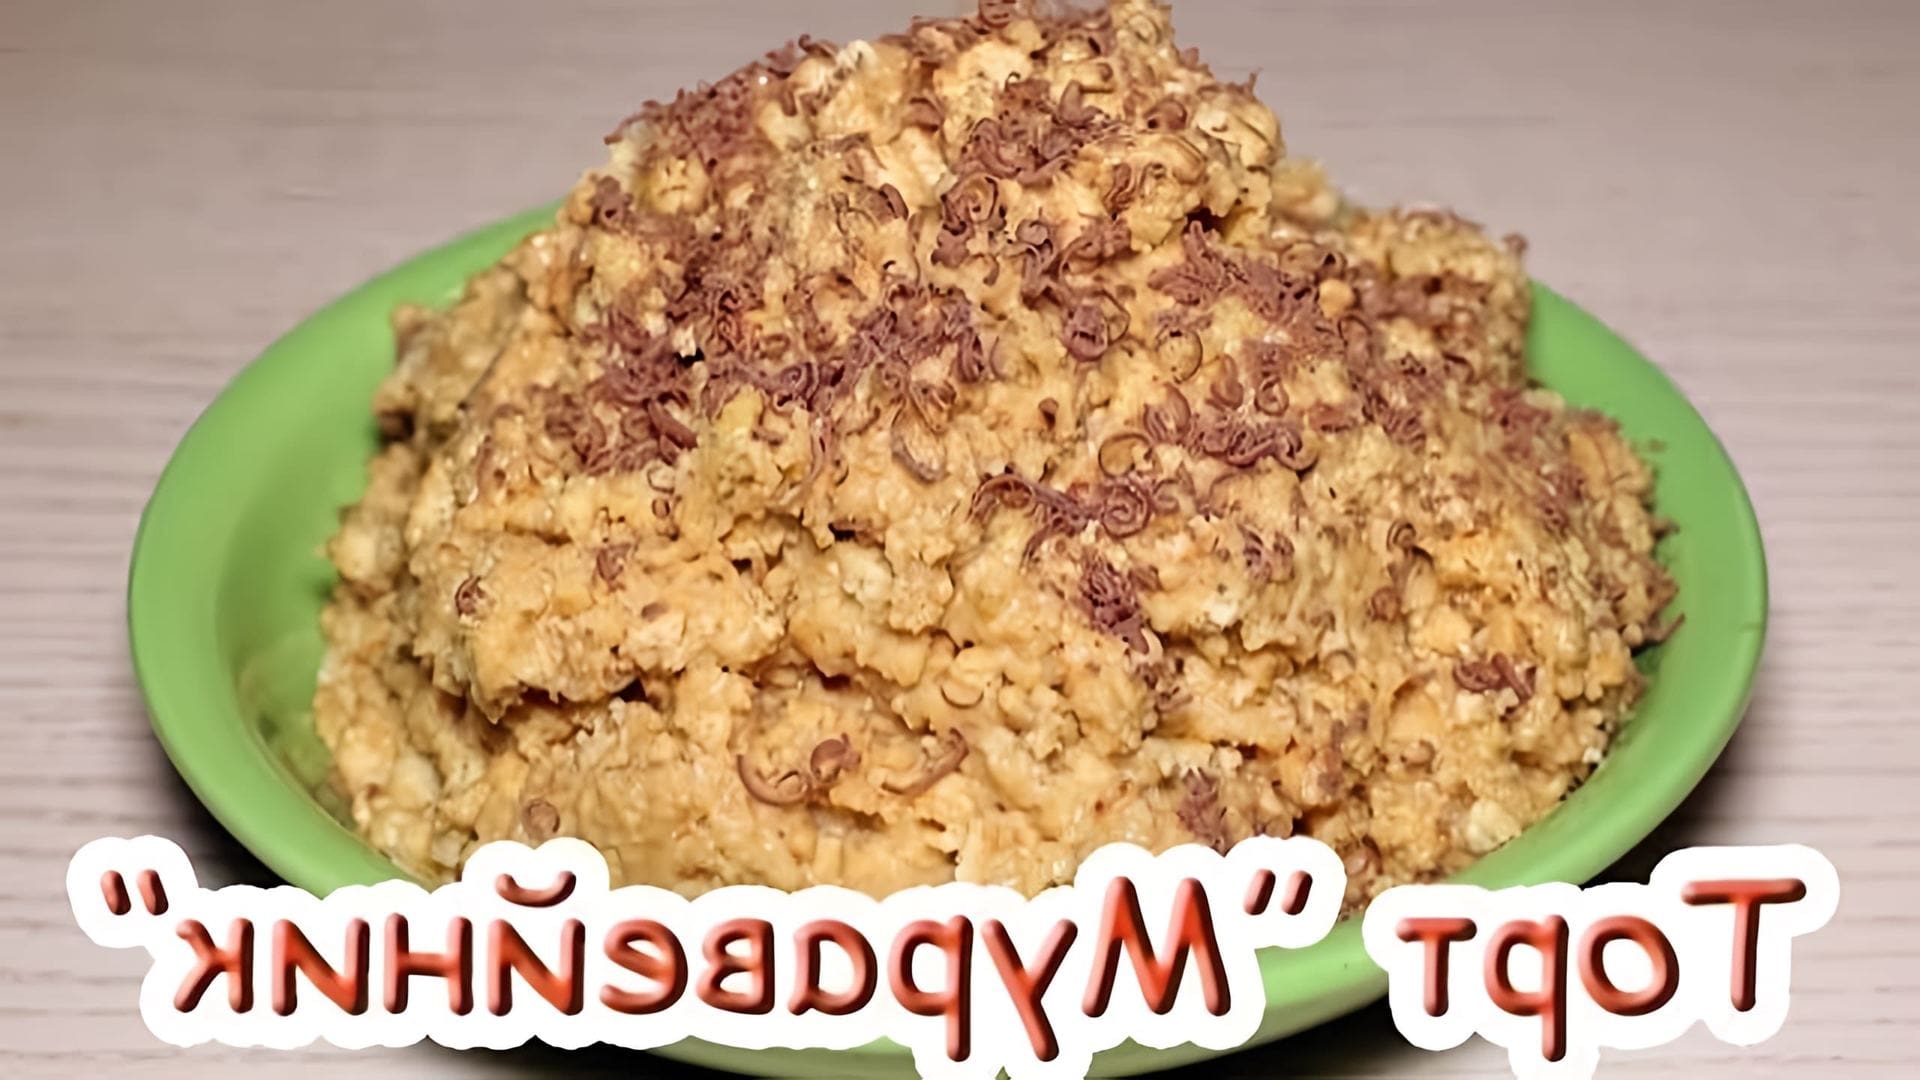 В этом видео демонстрируется быстрый и простой рецепт торта "Муравейник" без выпечки